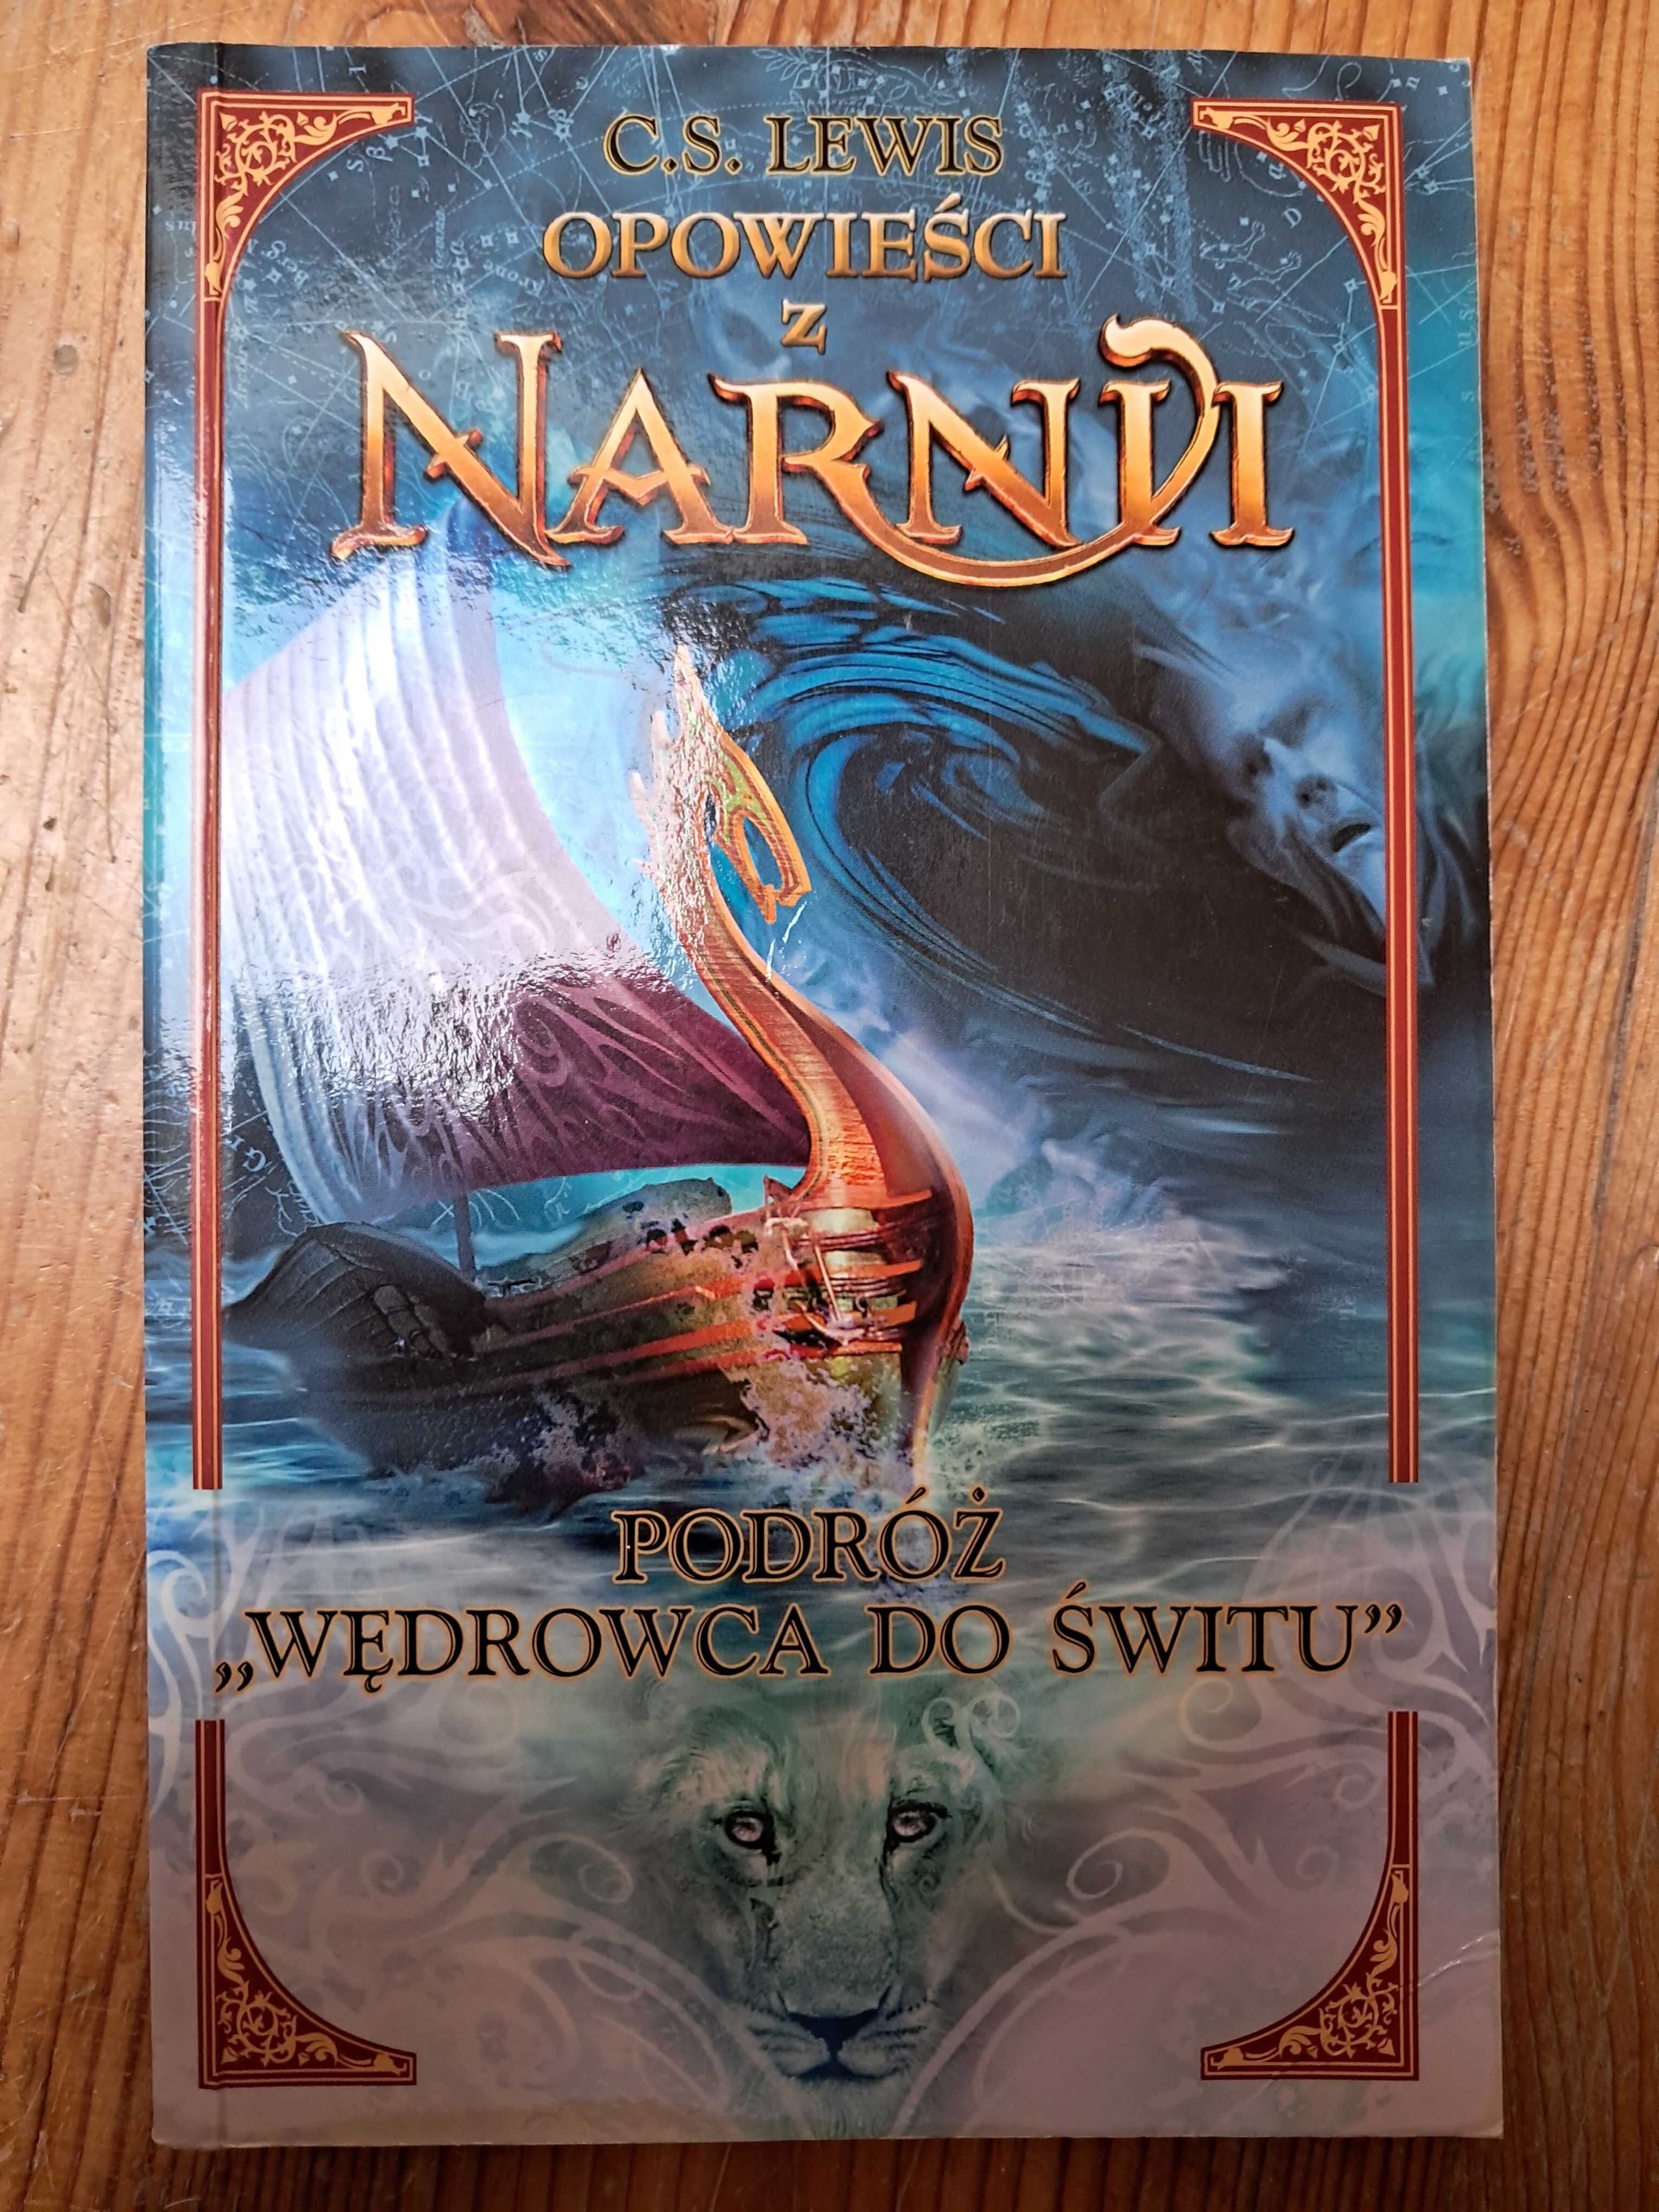 Opowieści z Narnii: Podróż 'Wędrowca do Świtu'. C.S Lewis